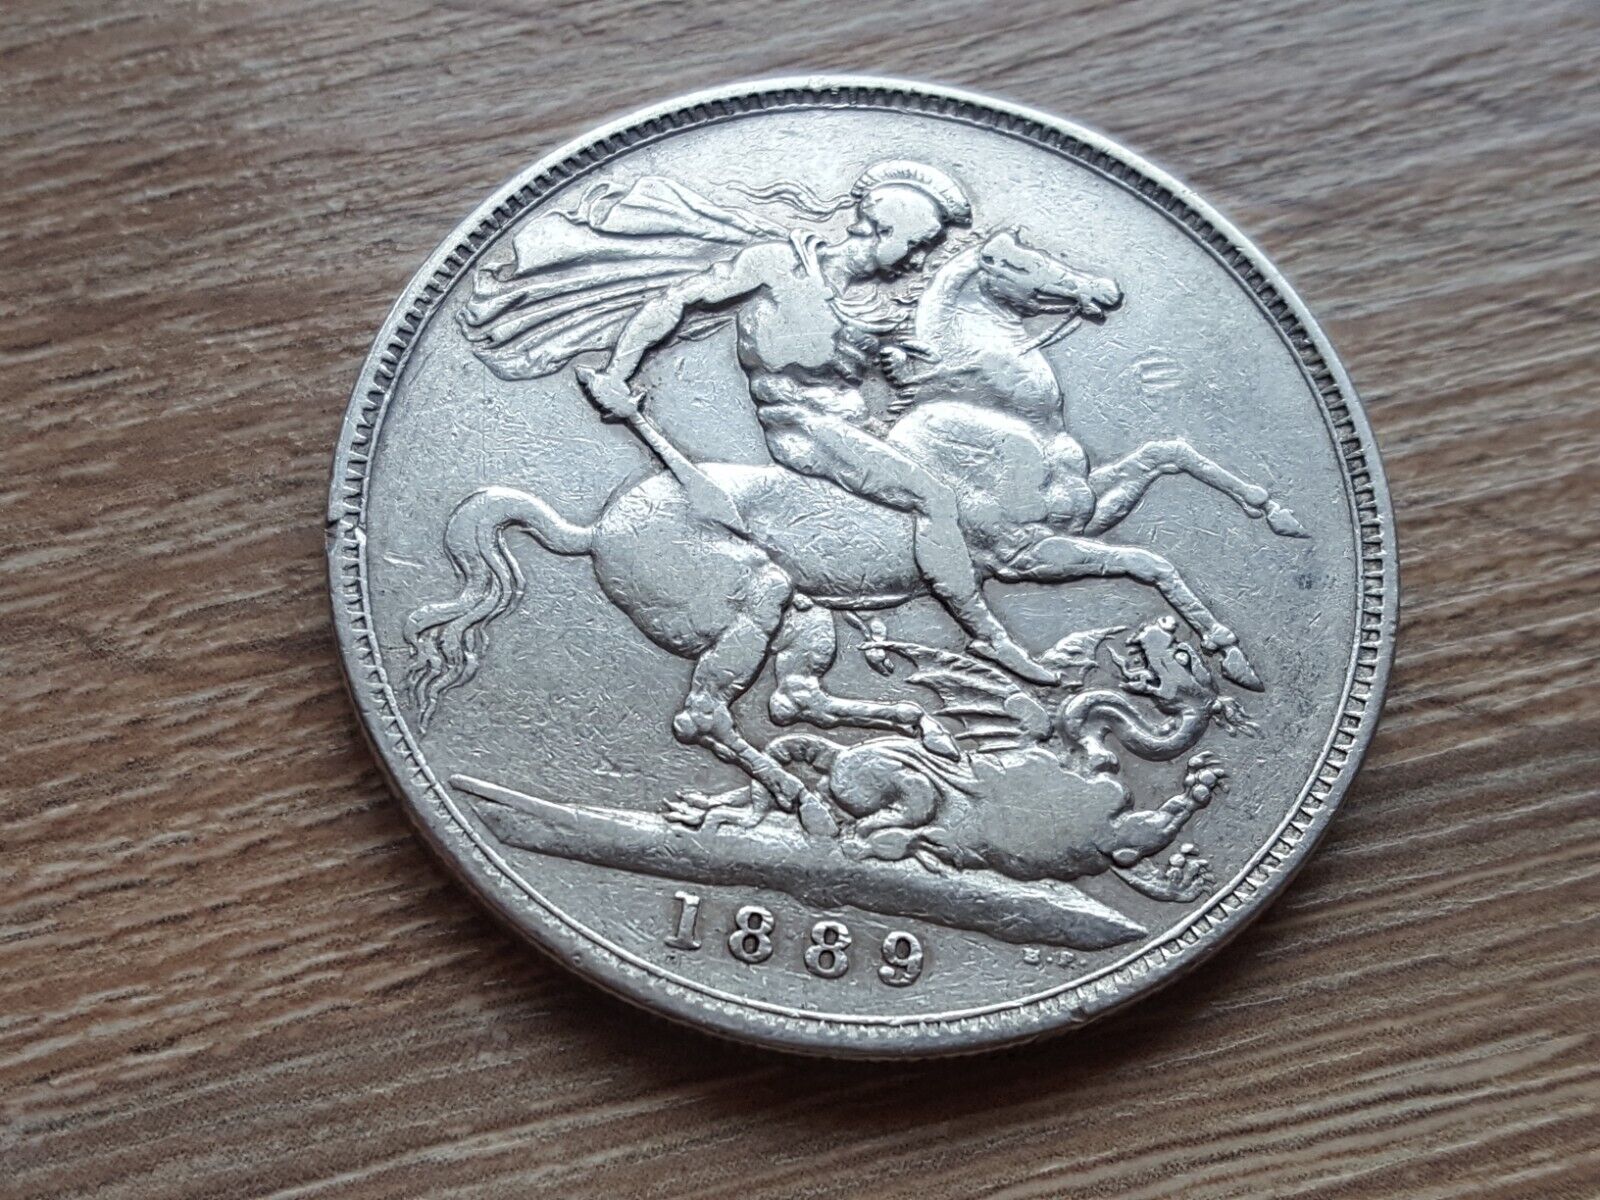 1889 VICTORIA British Silver Coin